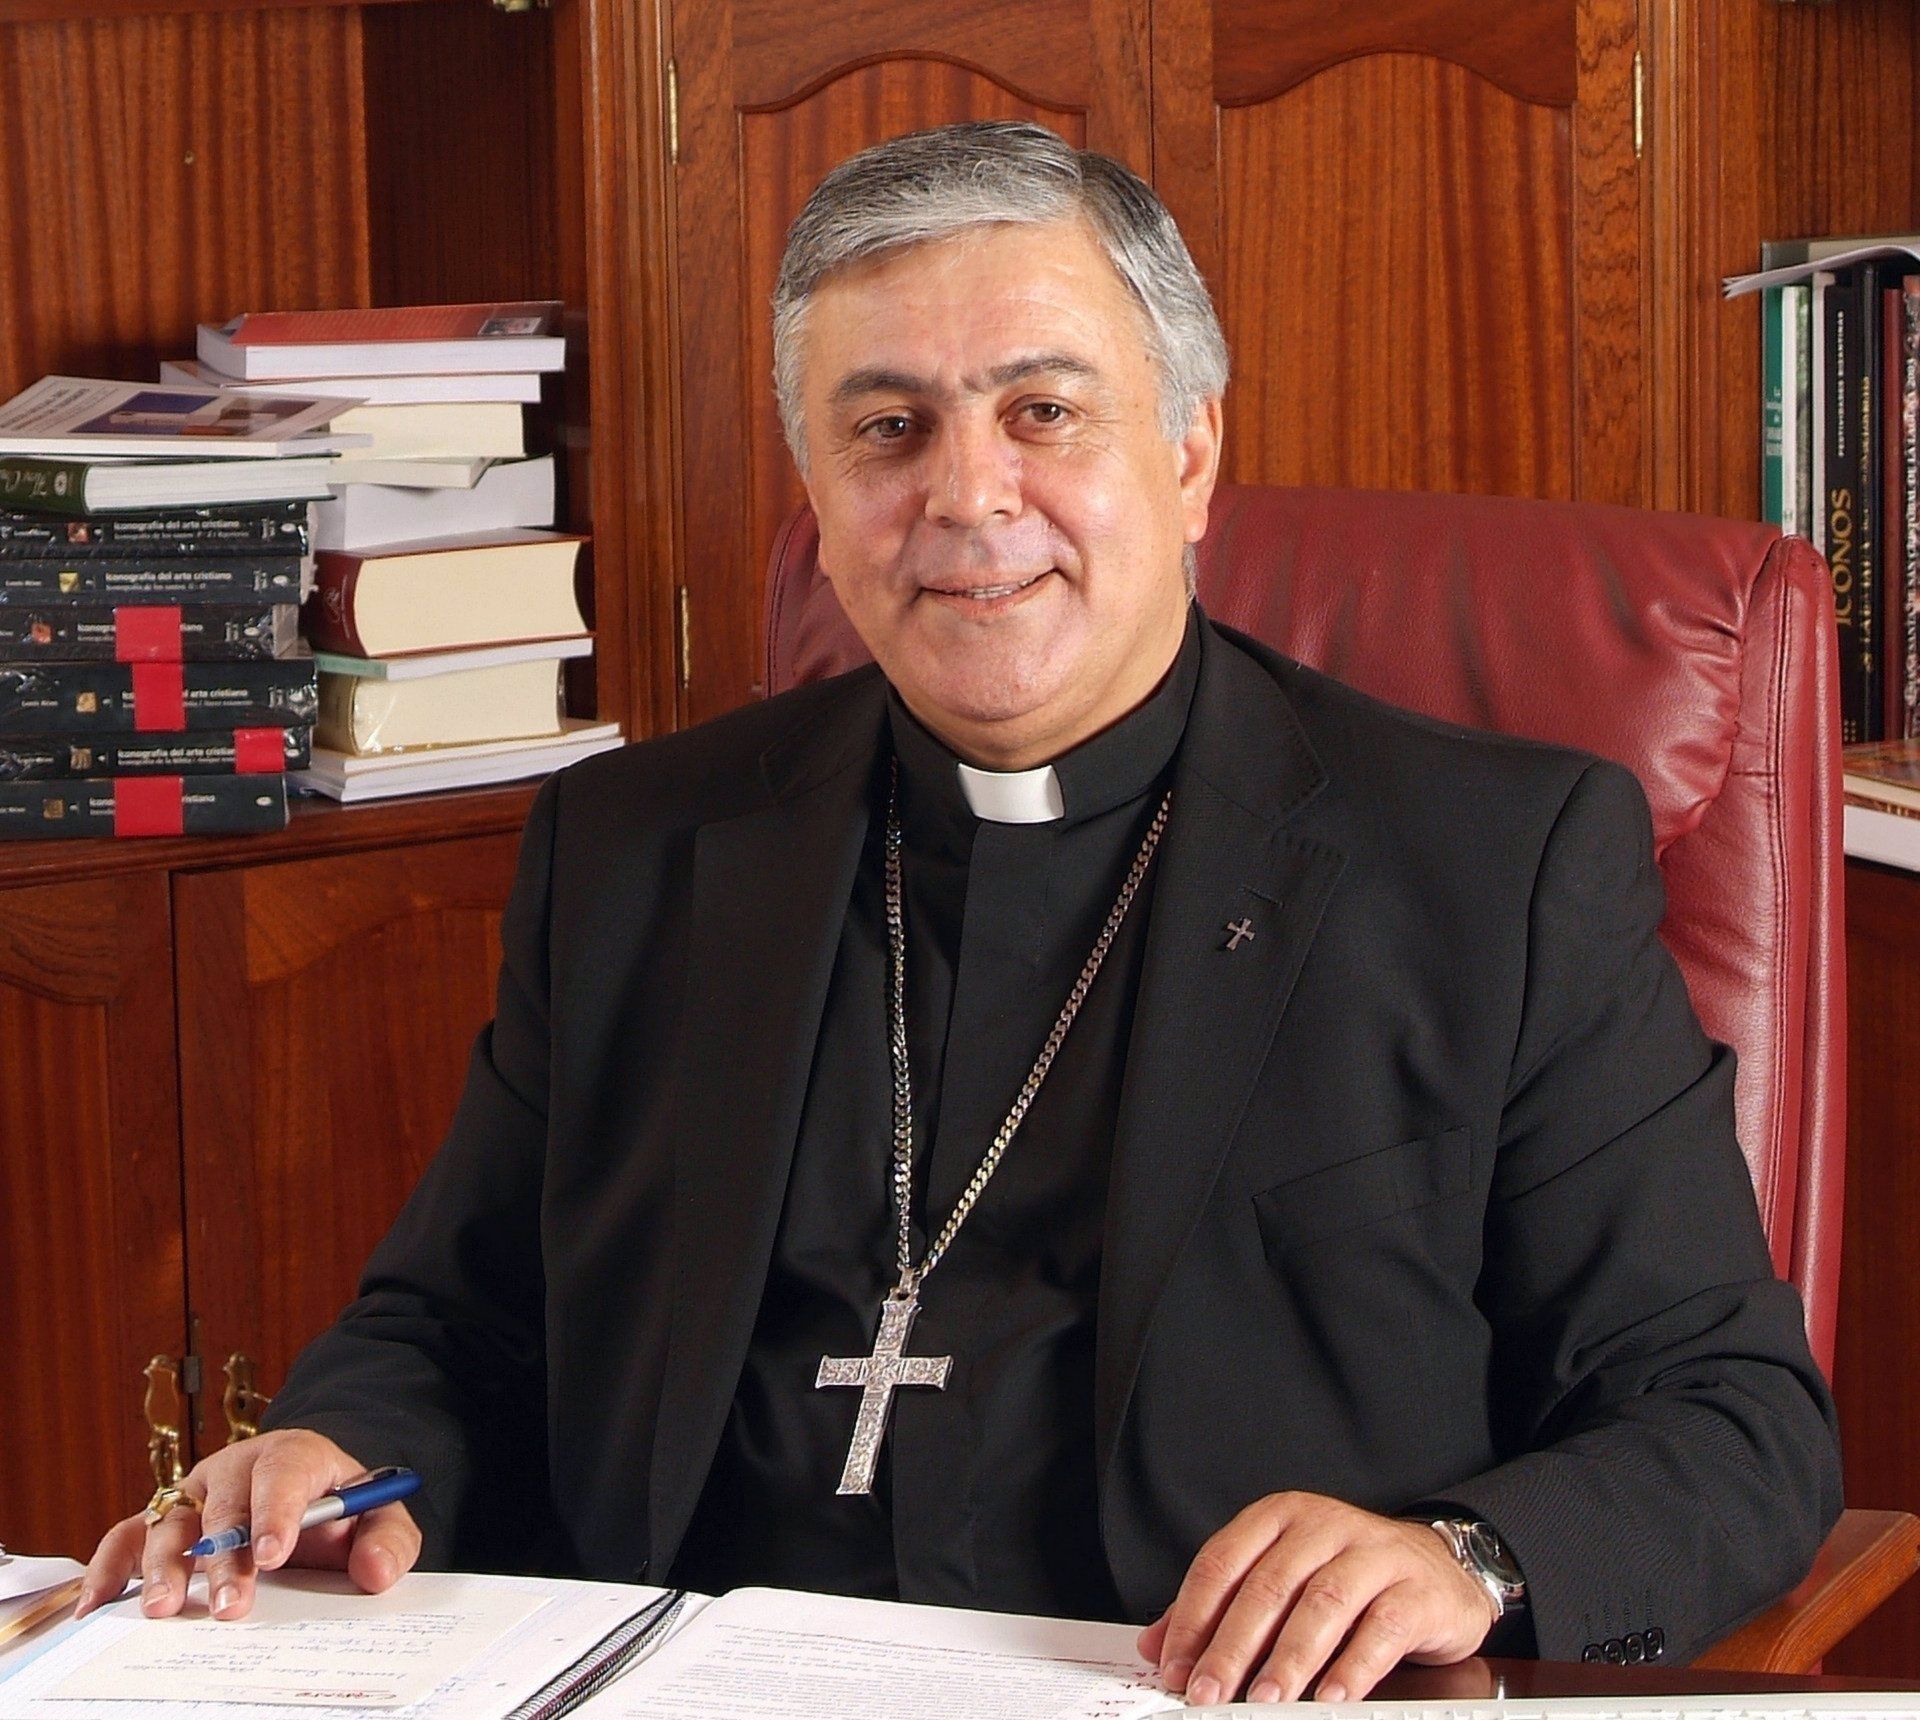 El obispo de Tenerife pide perdón a las personas LGTBI y lamenta haber 